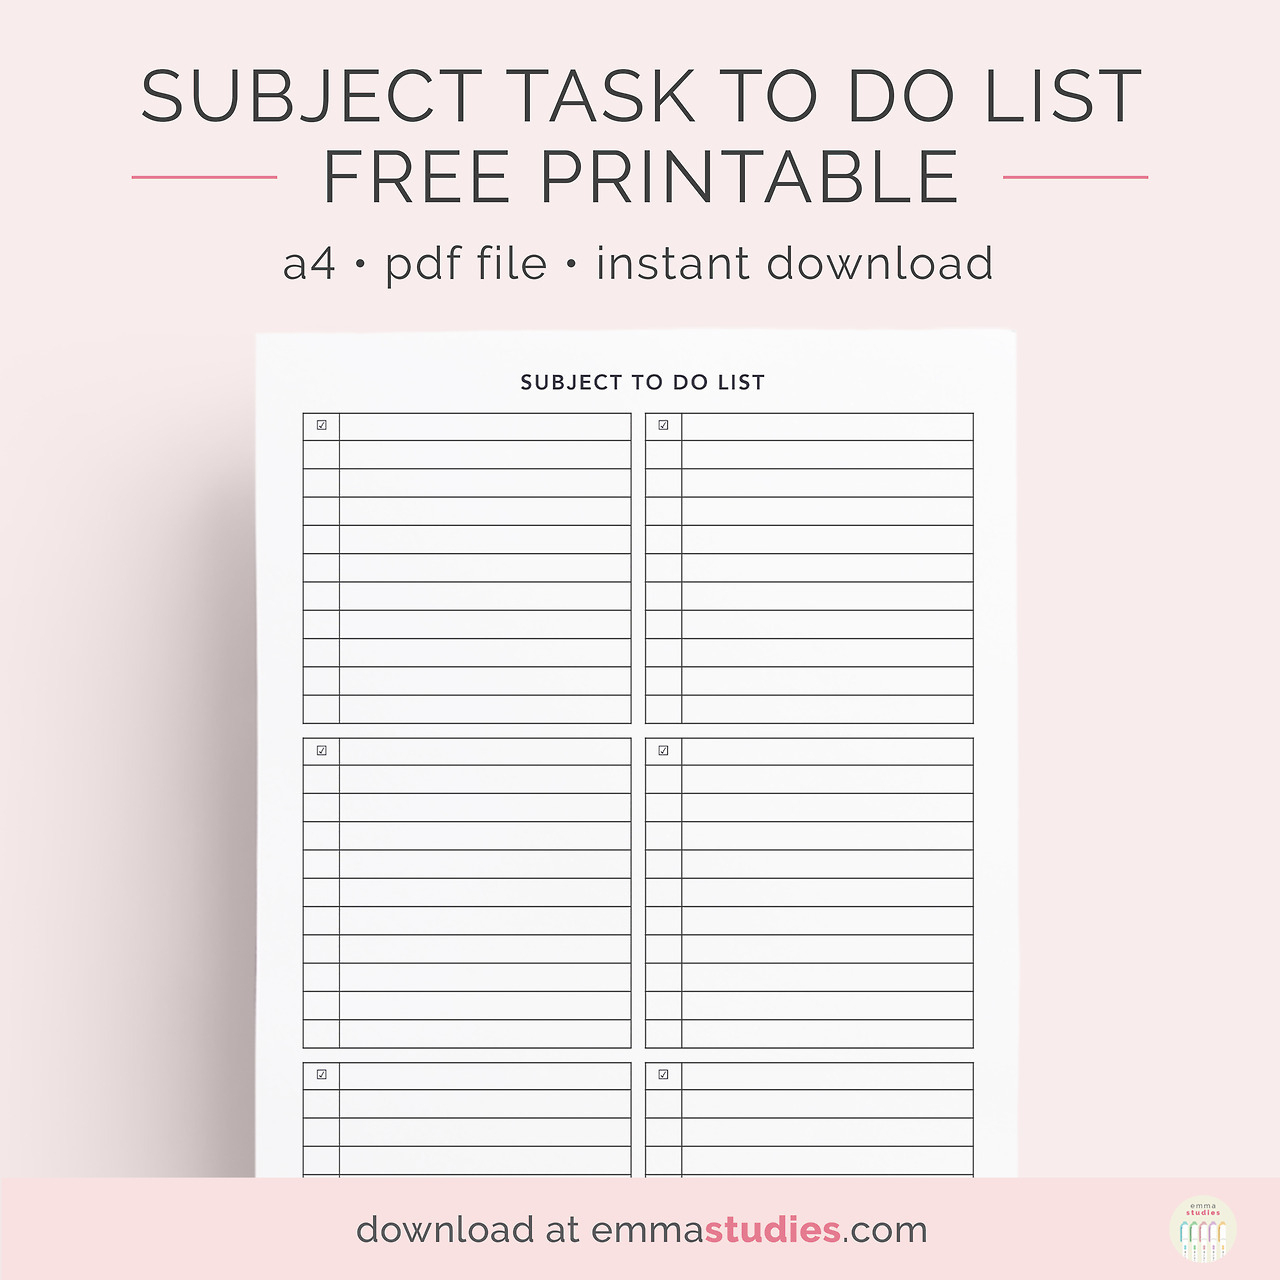 Emma&amp;#039;s Studyblr — Subject Task To Do List Free Printable An - Free Printable List